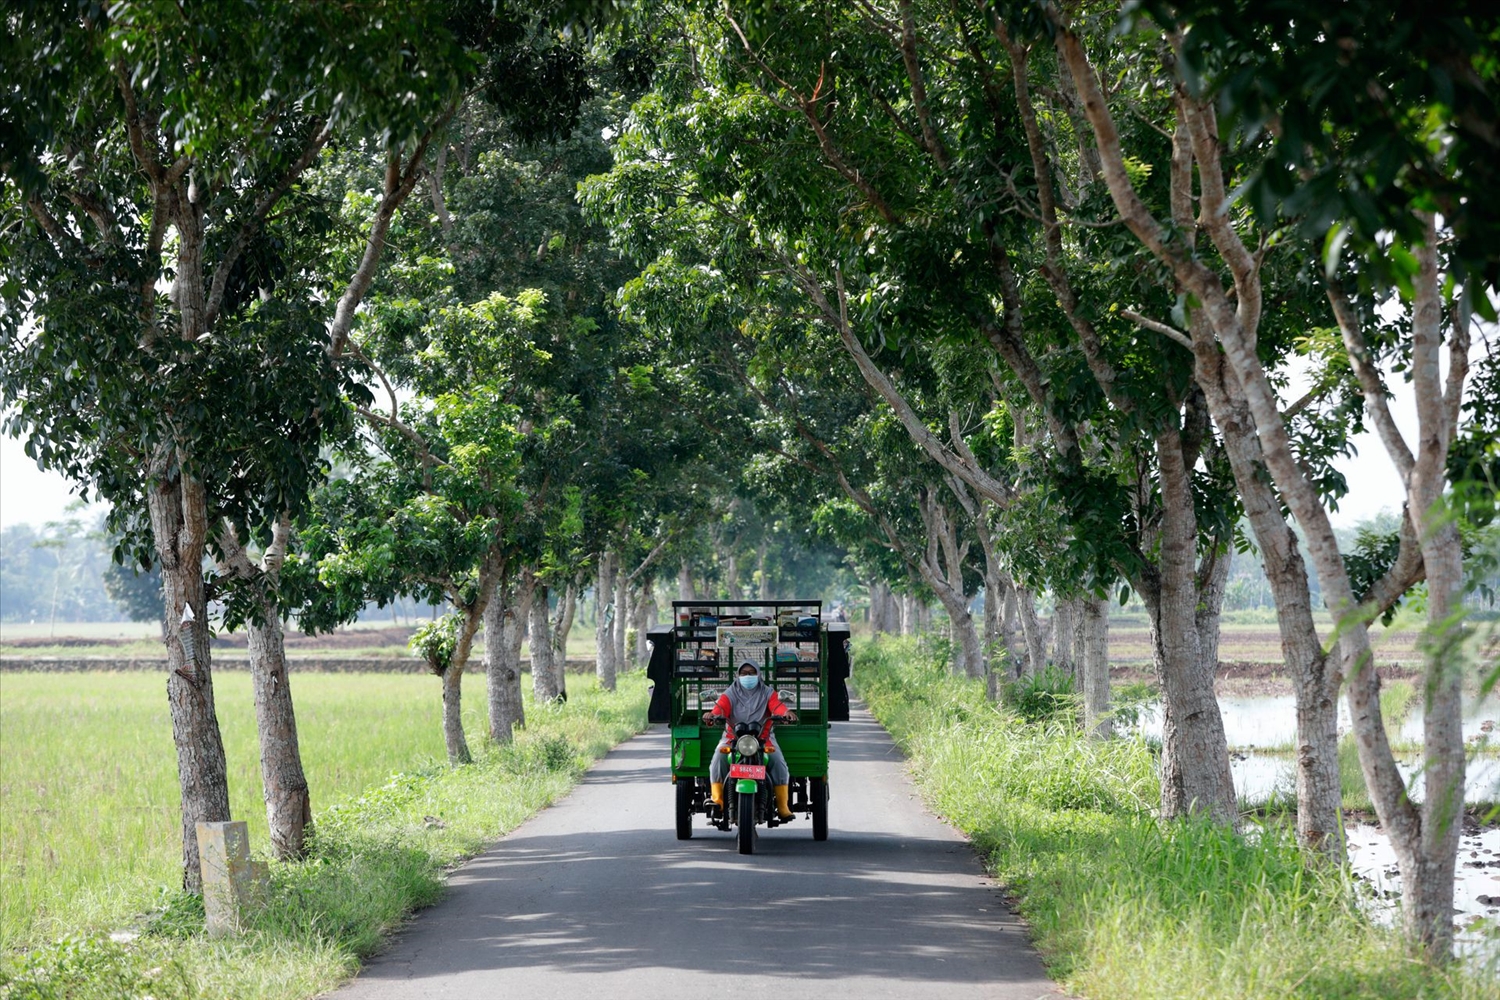 Raden Roro Hendarti lái xe 3 bánh đưa thư viện di động đến các trường học, khu dân cư ở làng Muntang